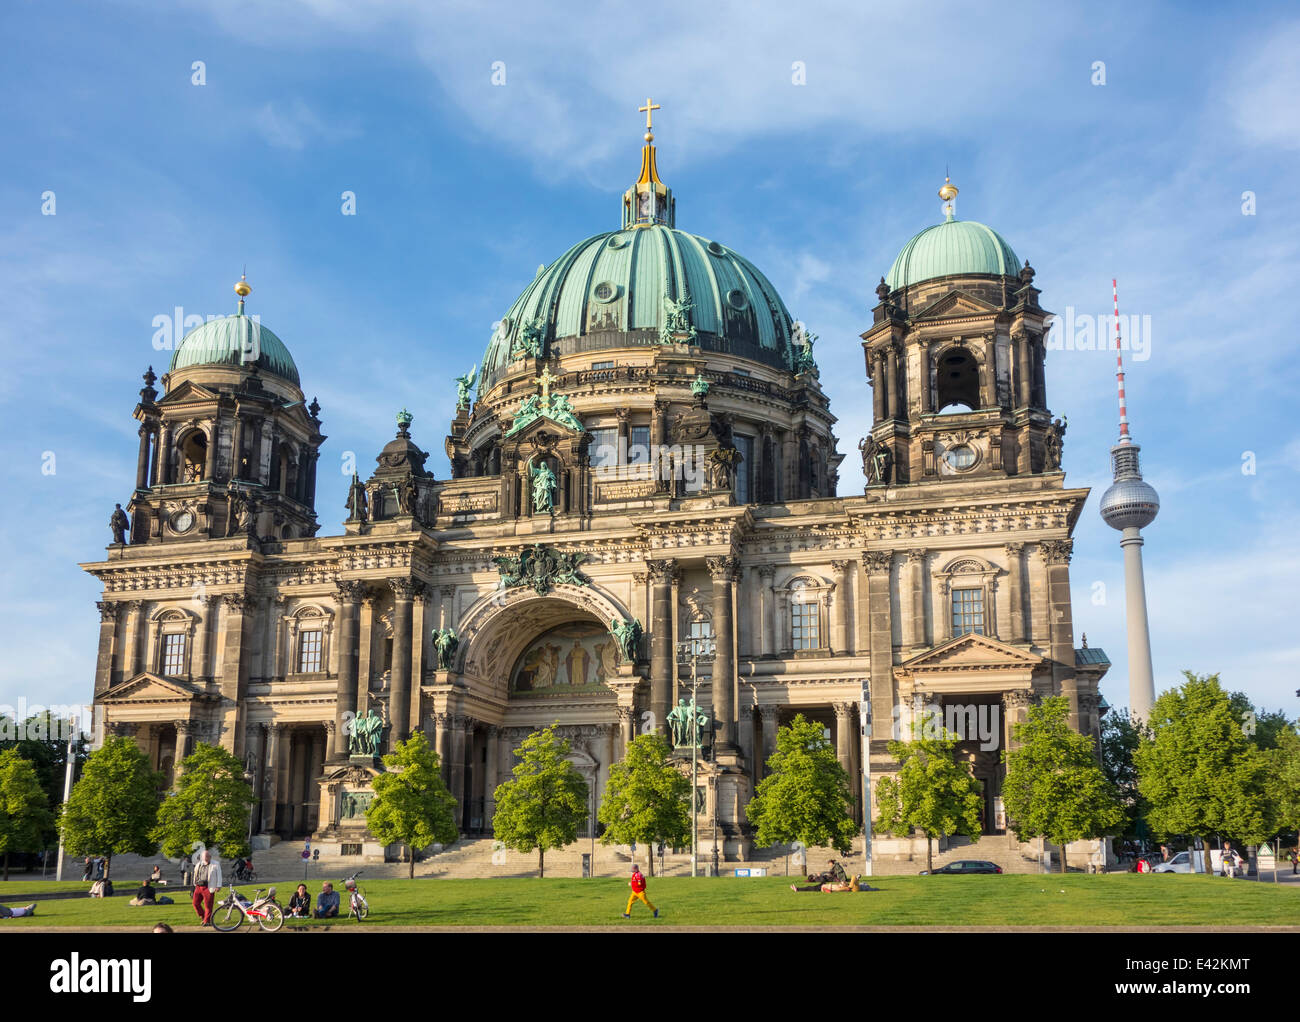 Berliner dome, Berlin Stock Photo